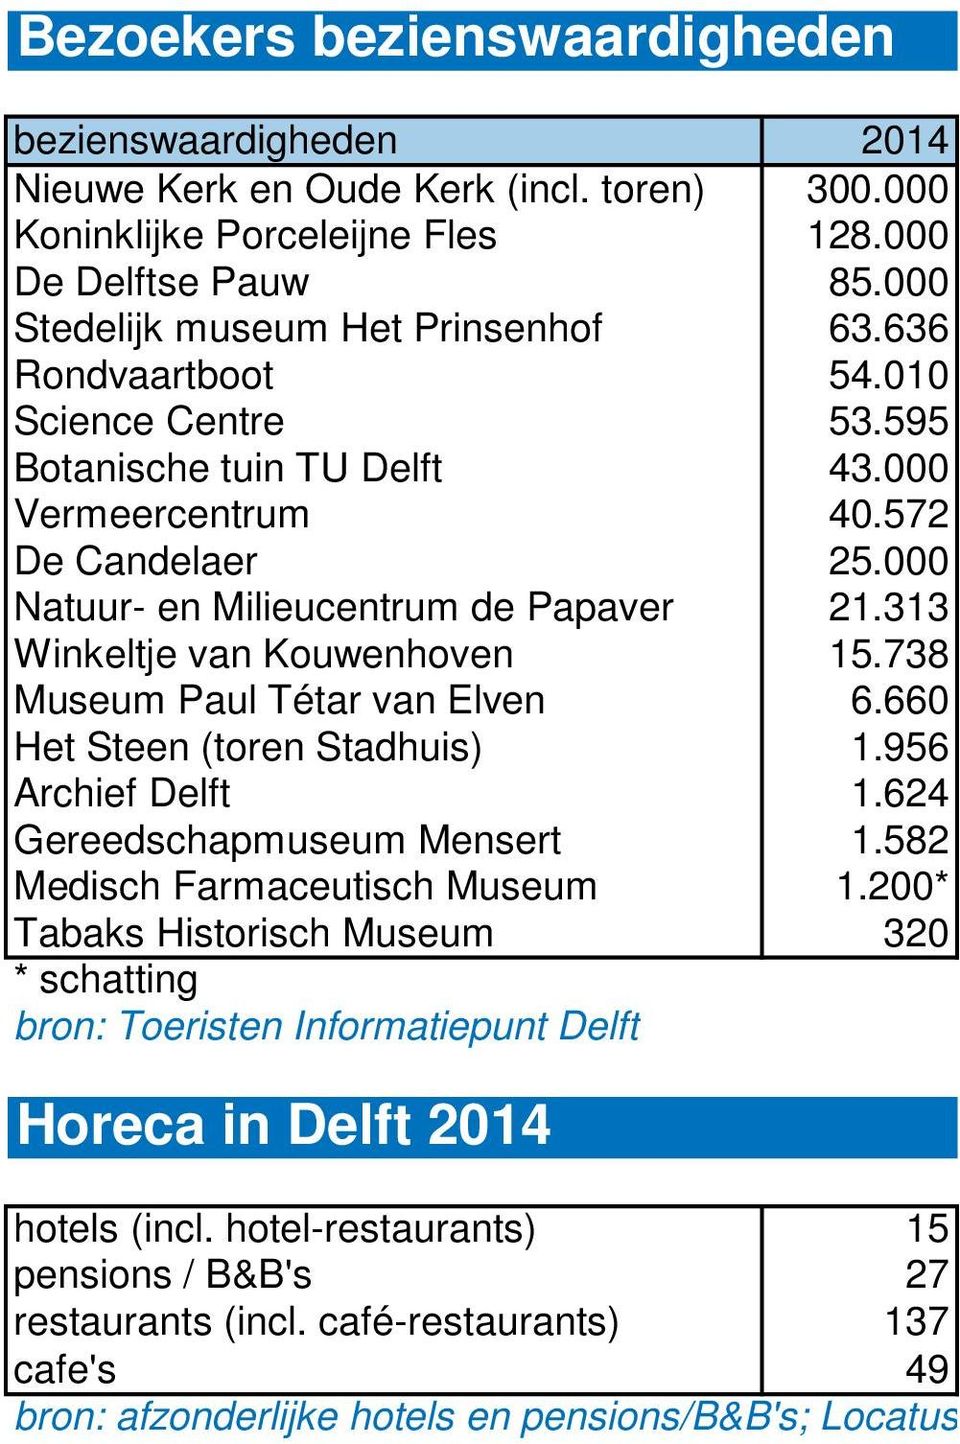 738 Museum Paul Tétar van Elven 6.660 Het Steen (toren Stadhuis) 1.956 Archief Delft 1.624 Gereedschapmuseum Mensert 1.582 Medisch Farmaceutisch Museum 1.